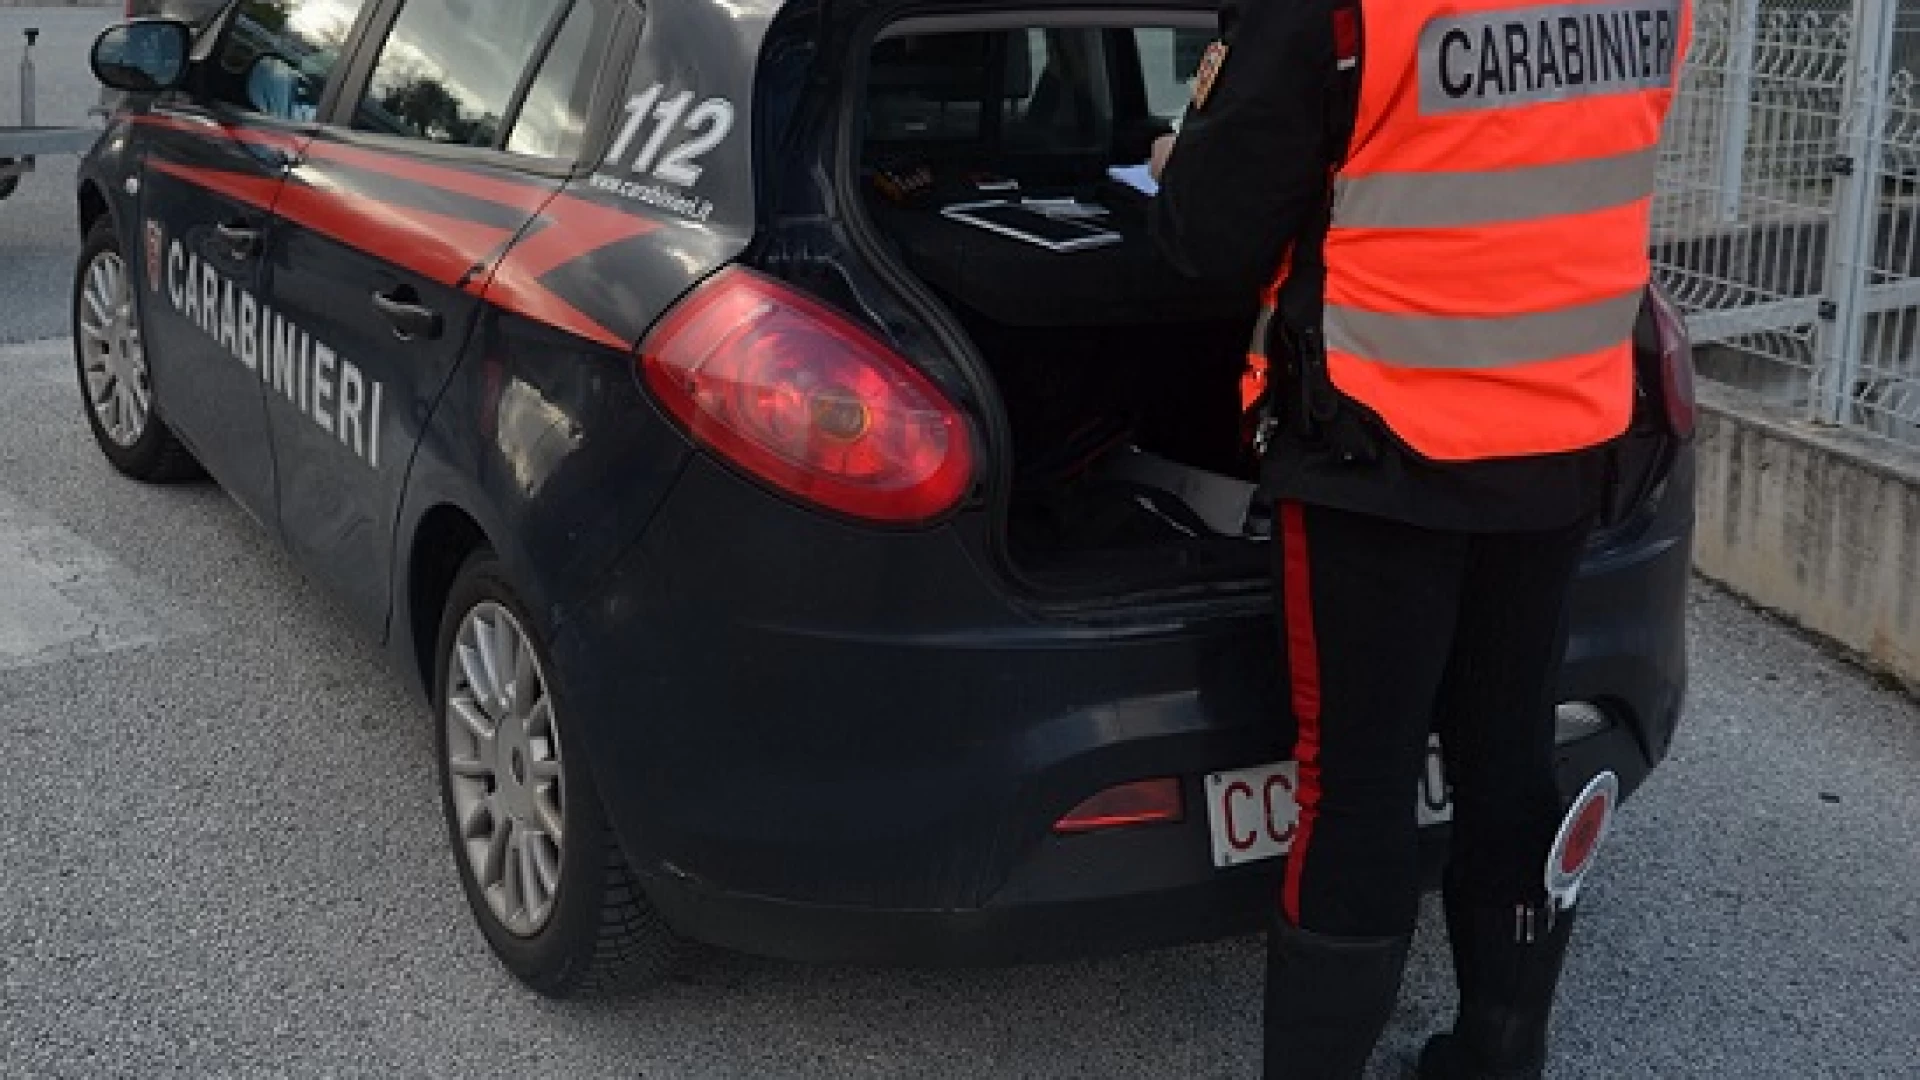 Isernia: Carabinieri intervengono in un appartamento per una richiesta di aiuto da parte di un invalido civile.